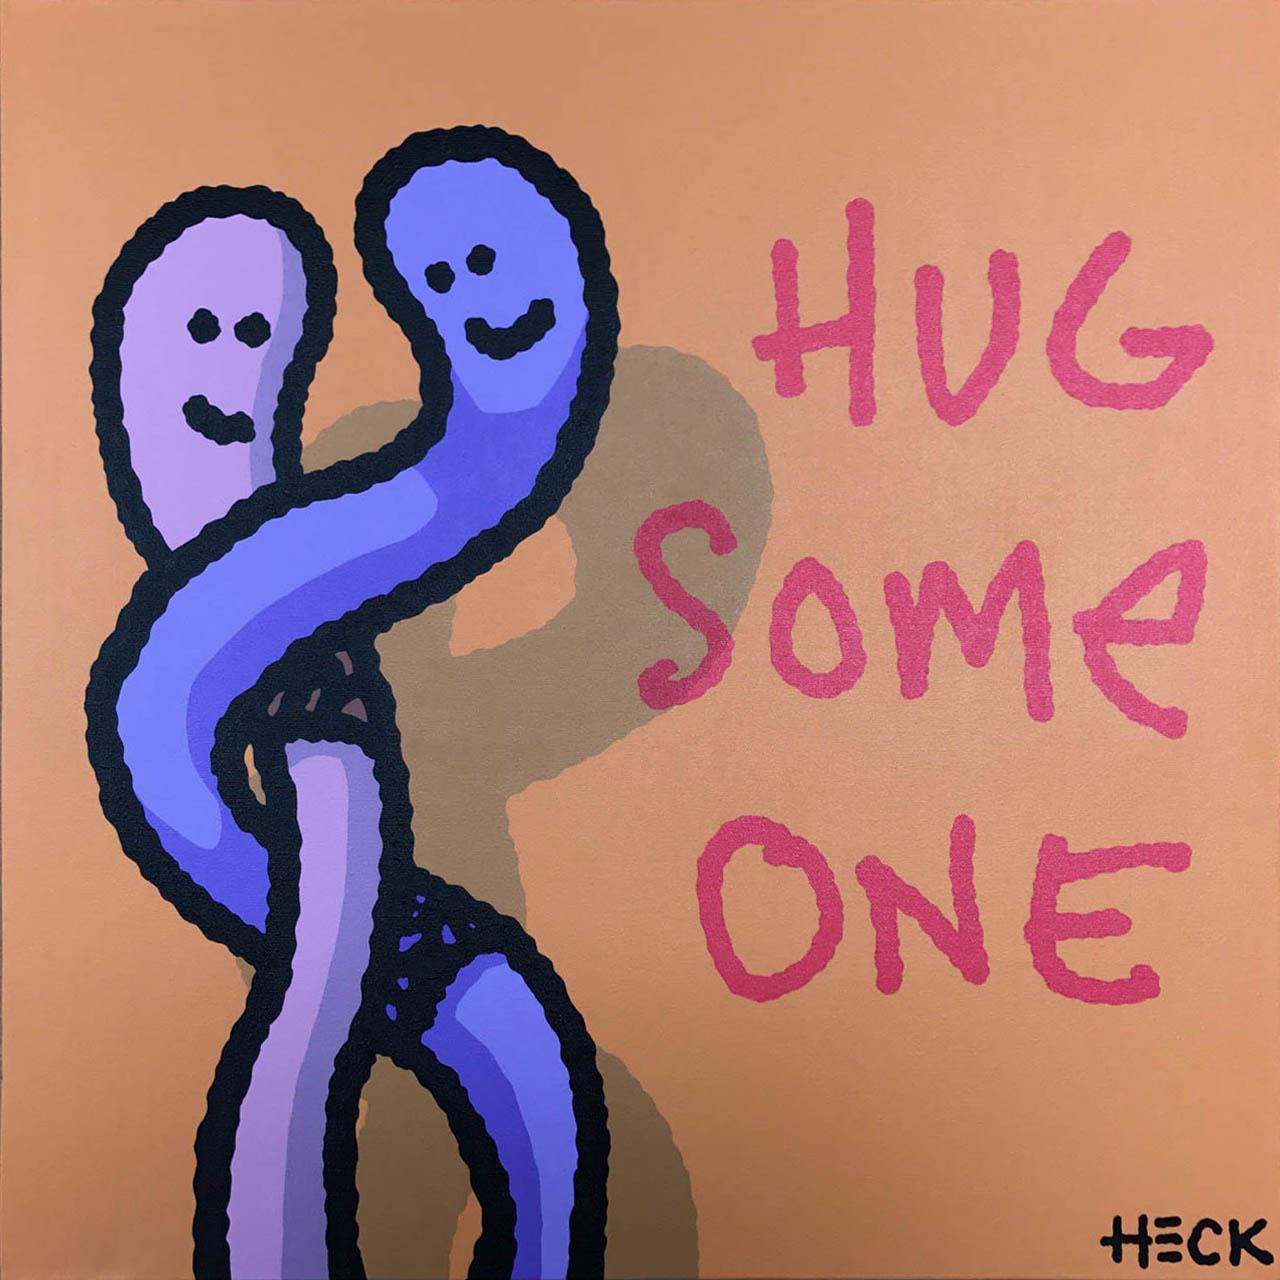 Hug Some One